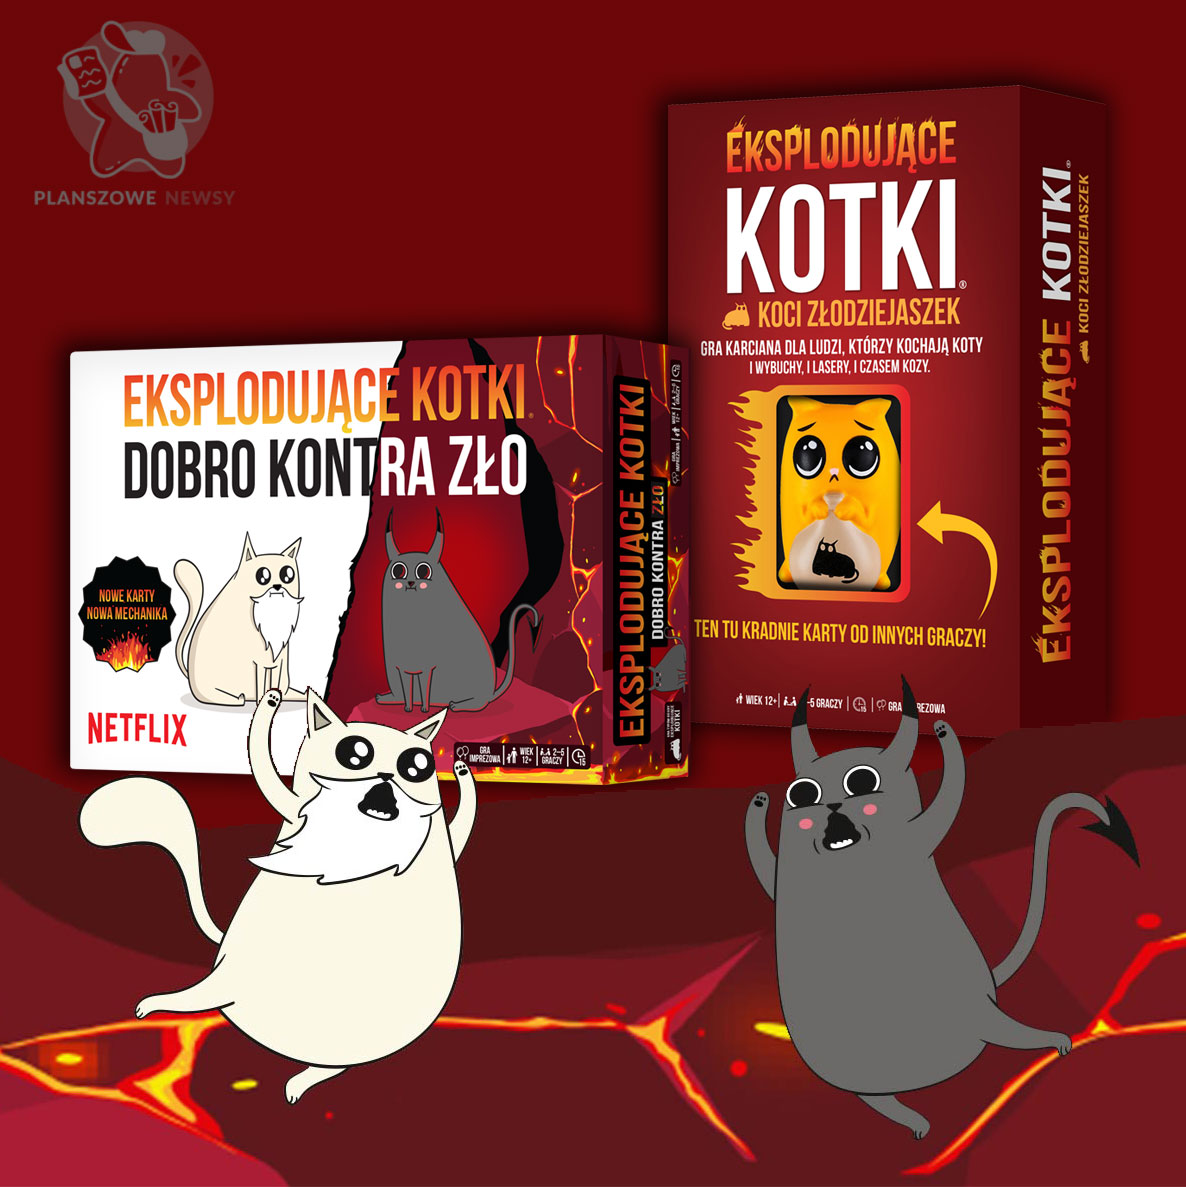 Eksplodujące kotki: Koci złodziejaszek i Eksplodujące kotki: dobro kontra zło - pudełka